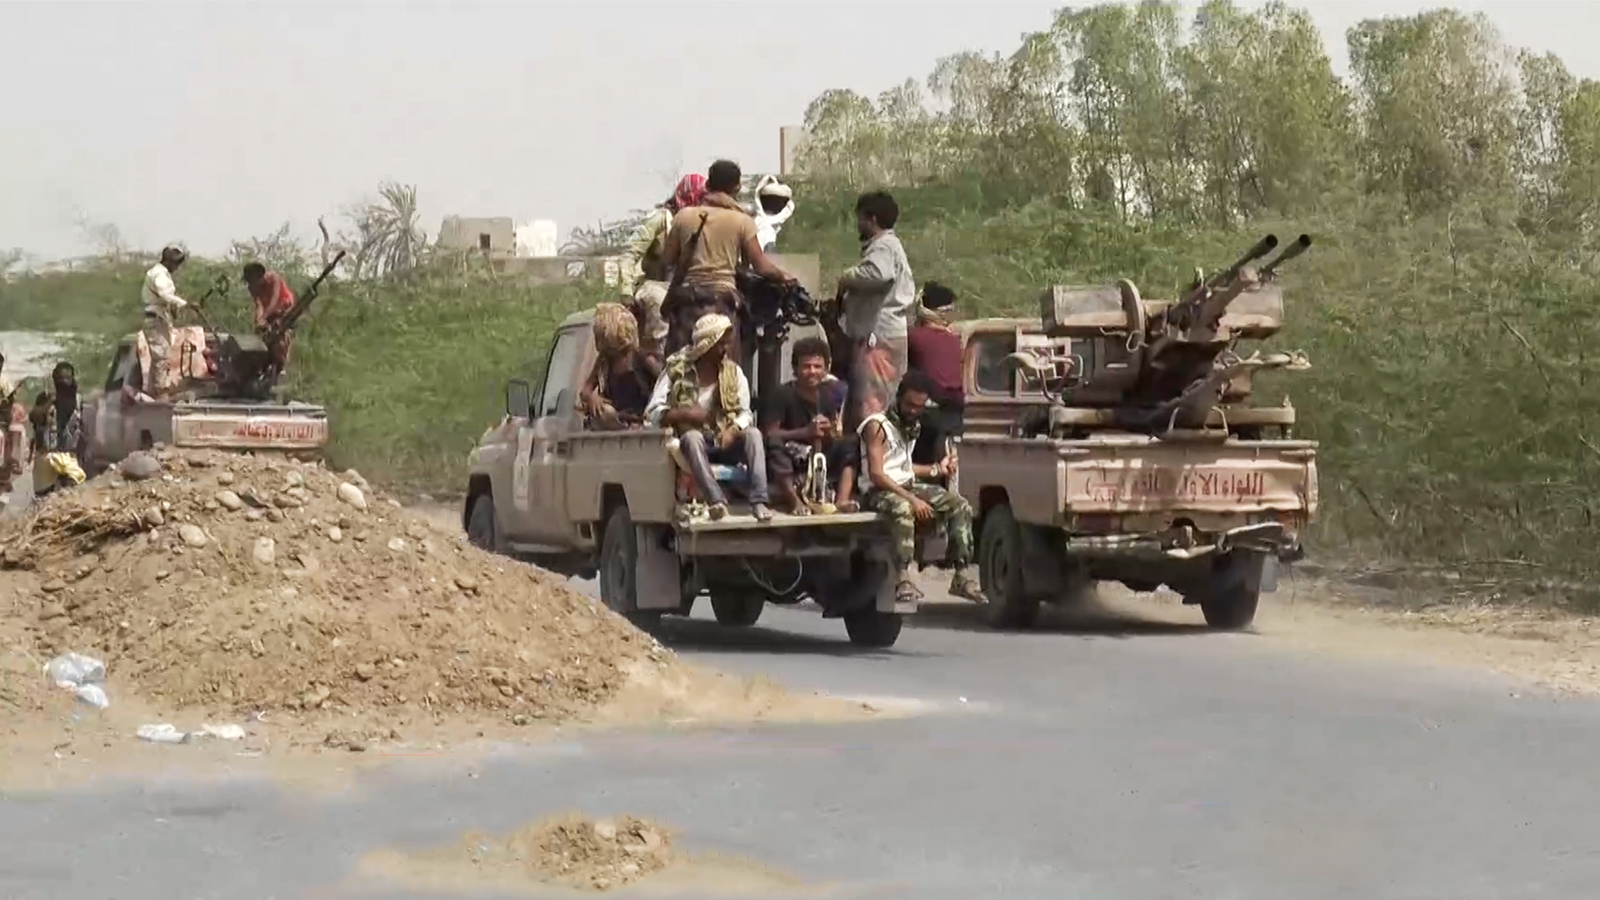 ‪معارك سابقة في الحديد بين الحوثيين والقوات الحكومية‬ معارك سابقة في الحديد بين الحوثيين والقوات الحكومية (الجزيرة)